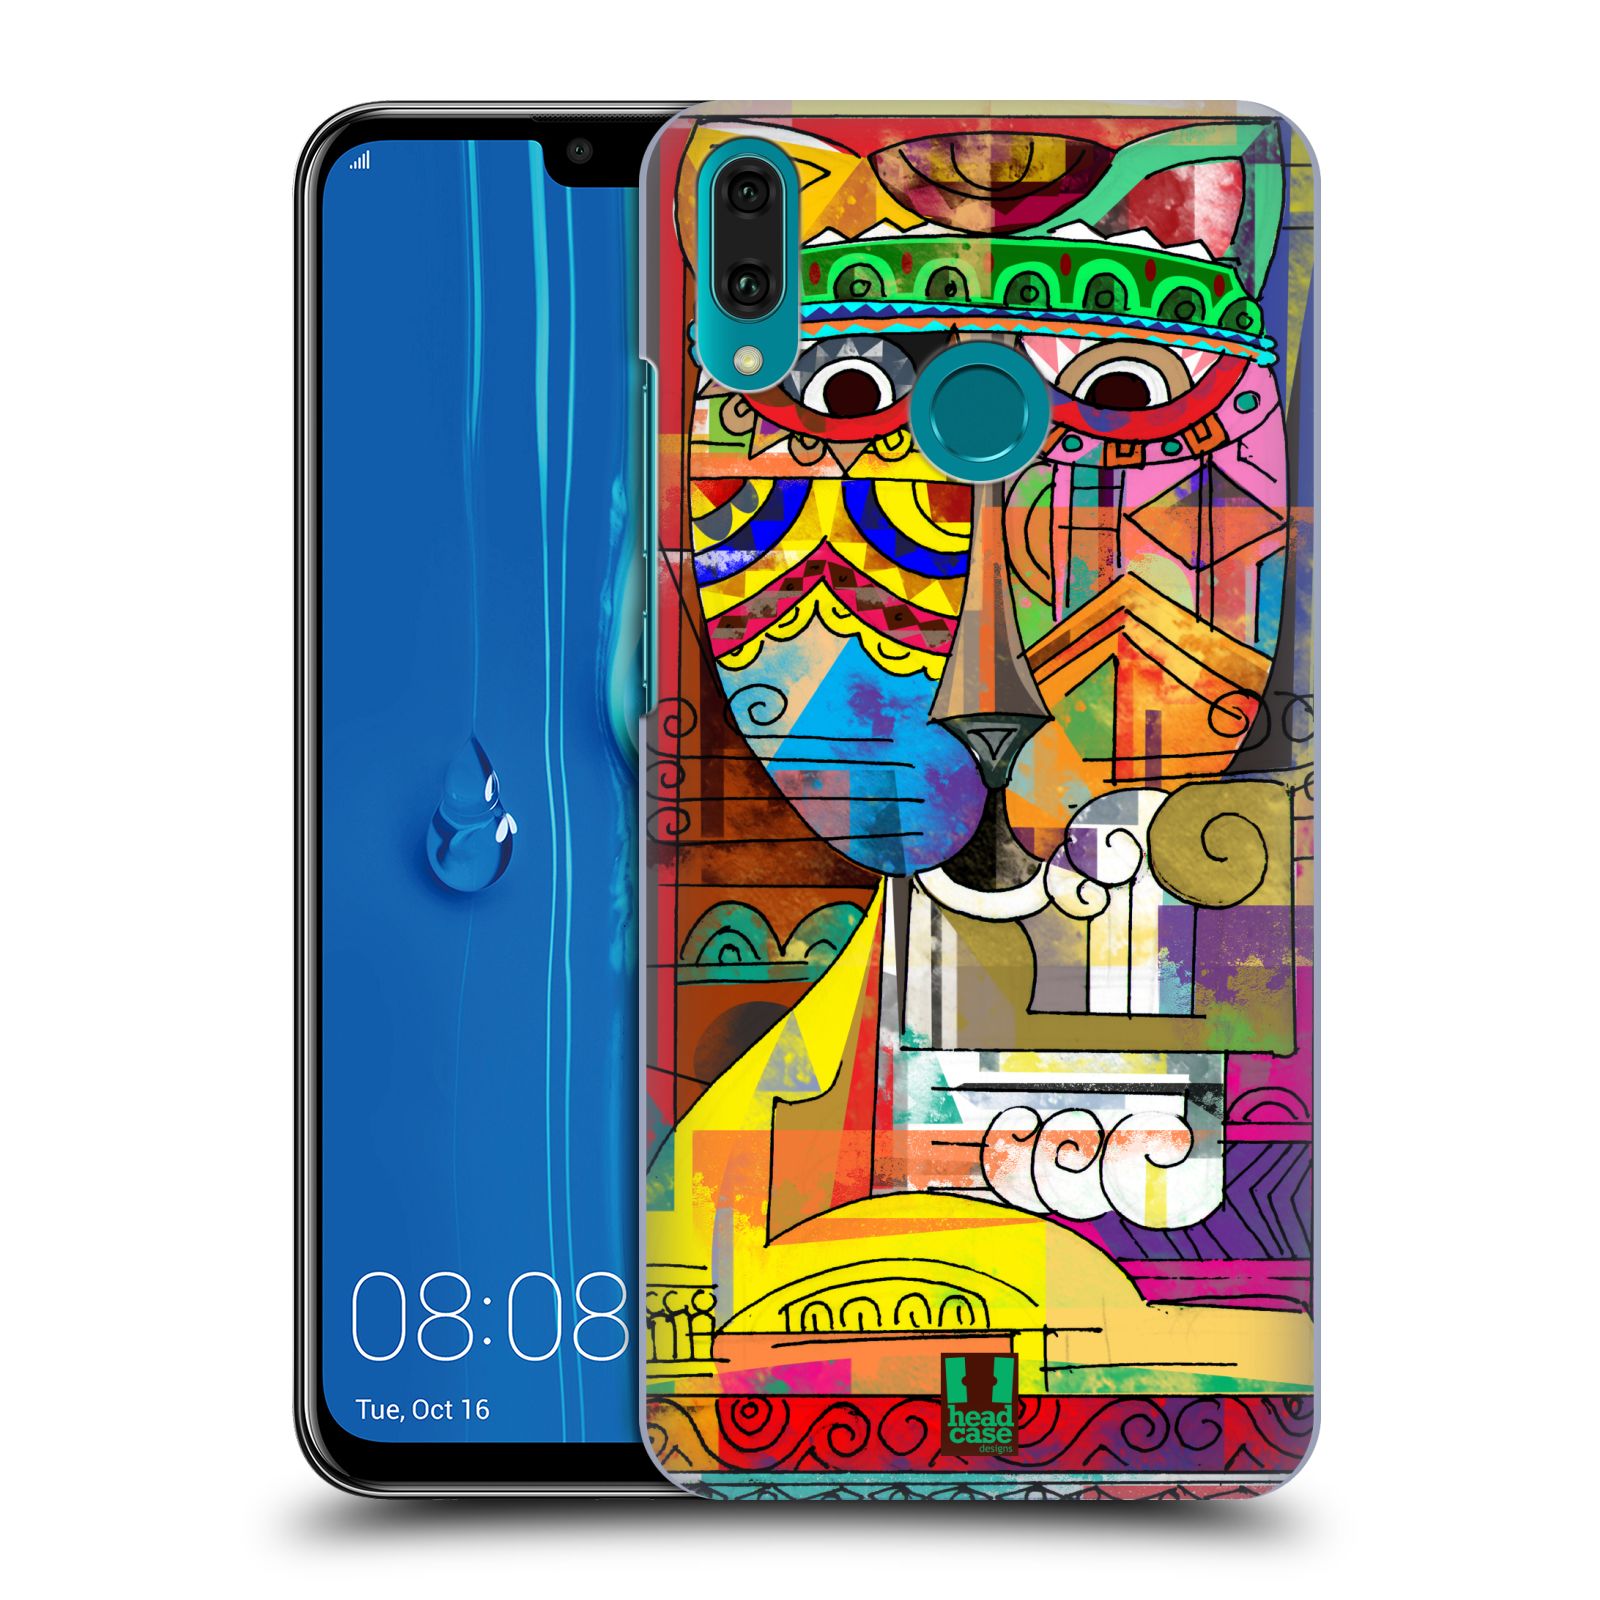 Pouzdro na mobil Huawei Y9 2019 - HEAD CASE - vzor Aztécký vzor abstrakce kočka SIAMSKÁ